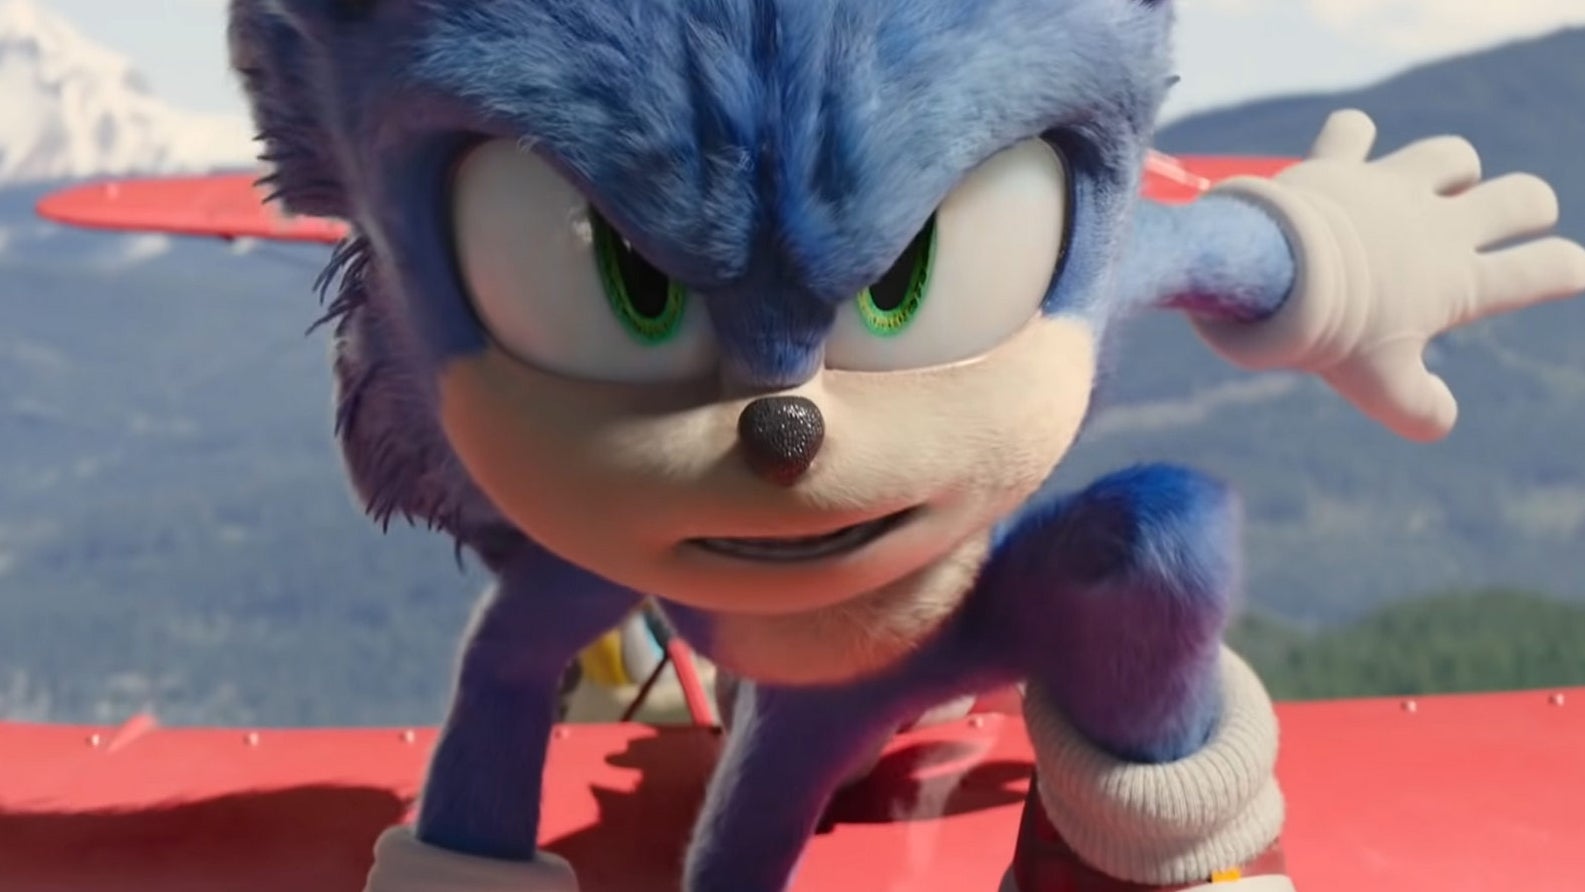 Immagine di Sonic the Hedgehog 2 nel nuovo trailer che fa riferimento anche a The Batman